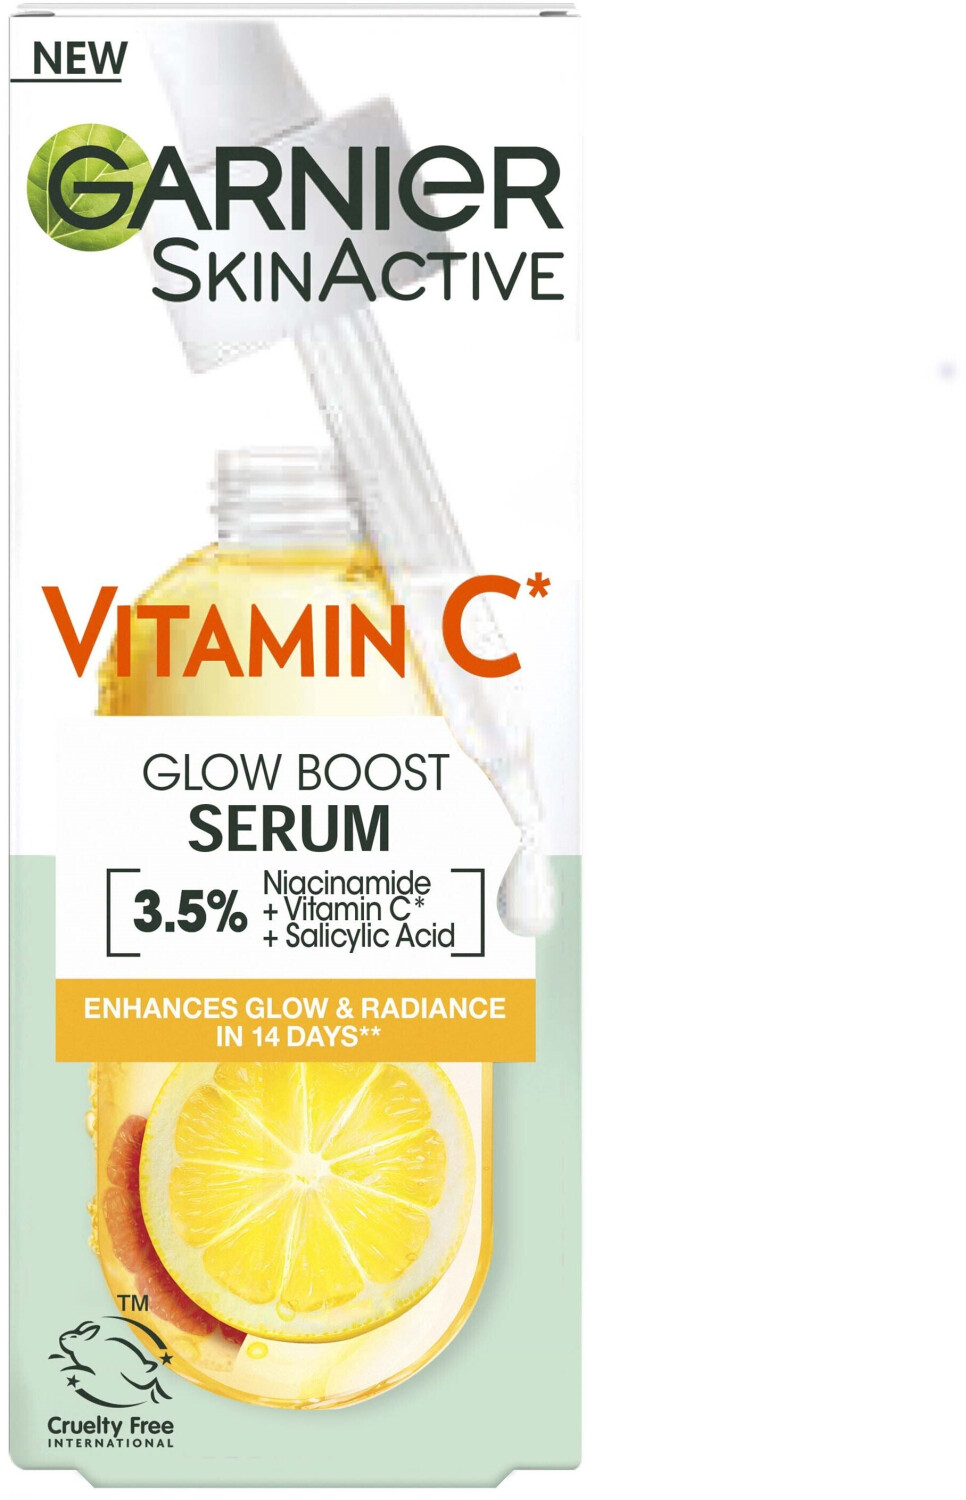 | € Preisvergleich Boost Vitamin (30ml) Garnier bei SkinActive Serum C Glow ab 11,95